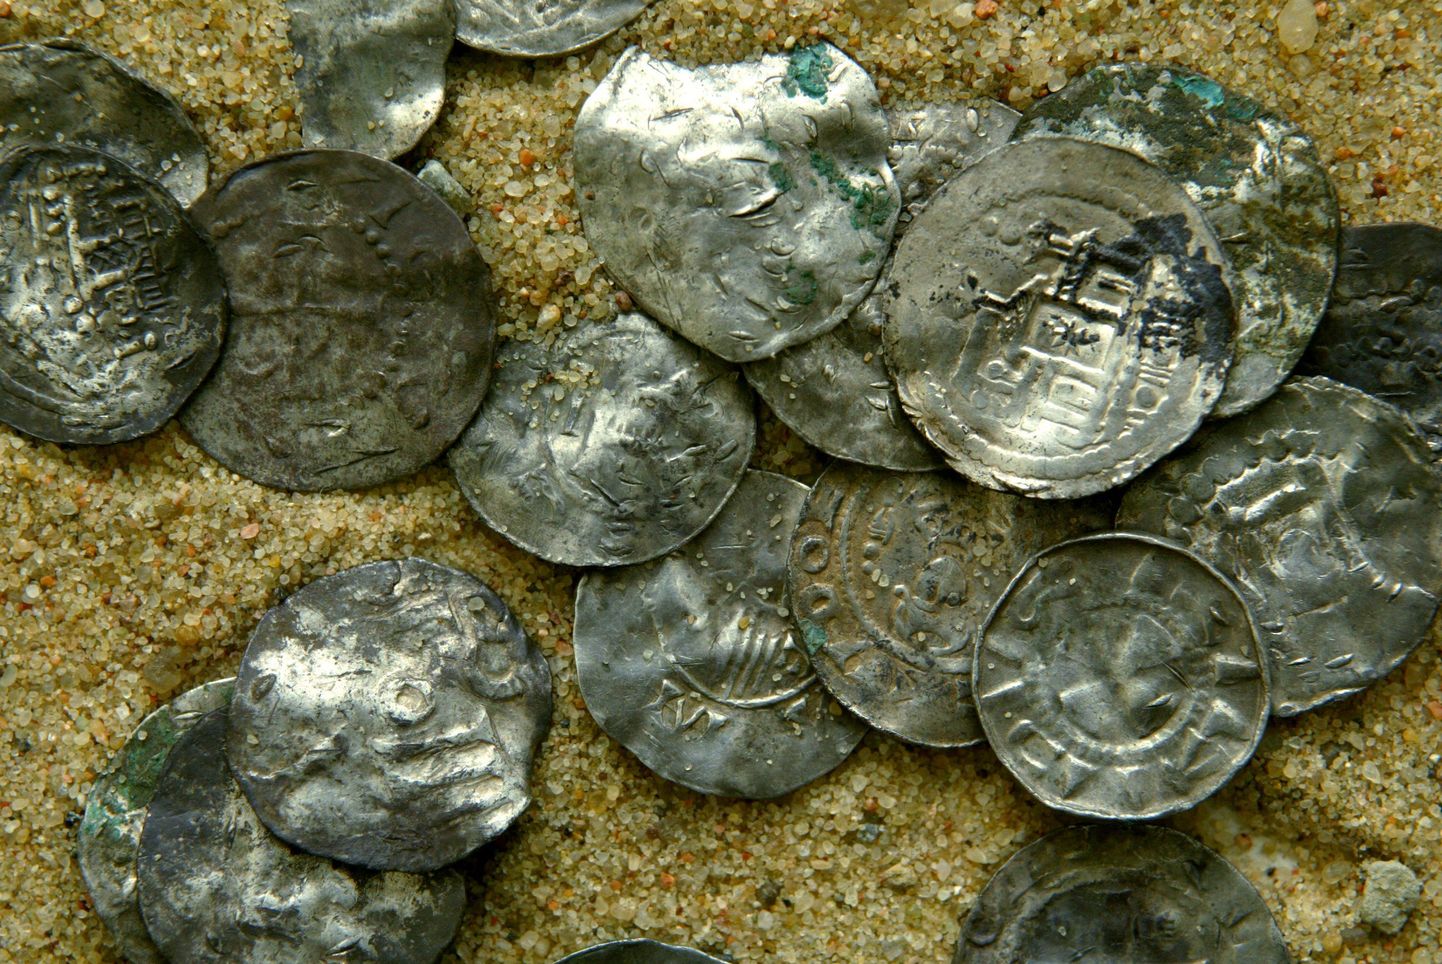 Aastal 2011 Harjumaal Anija vallas Linnakse külas Riisipõllu maaüksuselt leitud viikingiaegne hõbeaare, milles oli kokku 1329 münti ja üheksa hõbeeset. Leiuautasu 99 063 eurot.